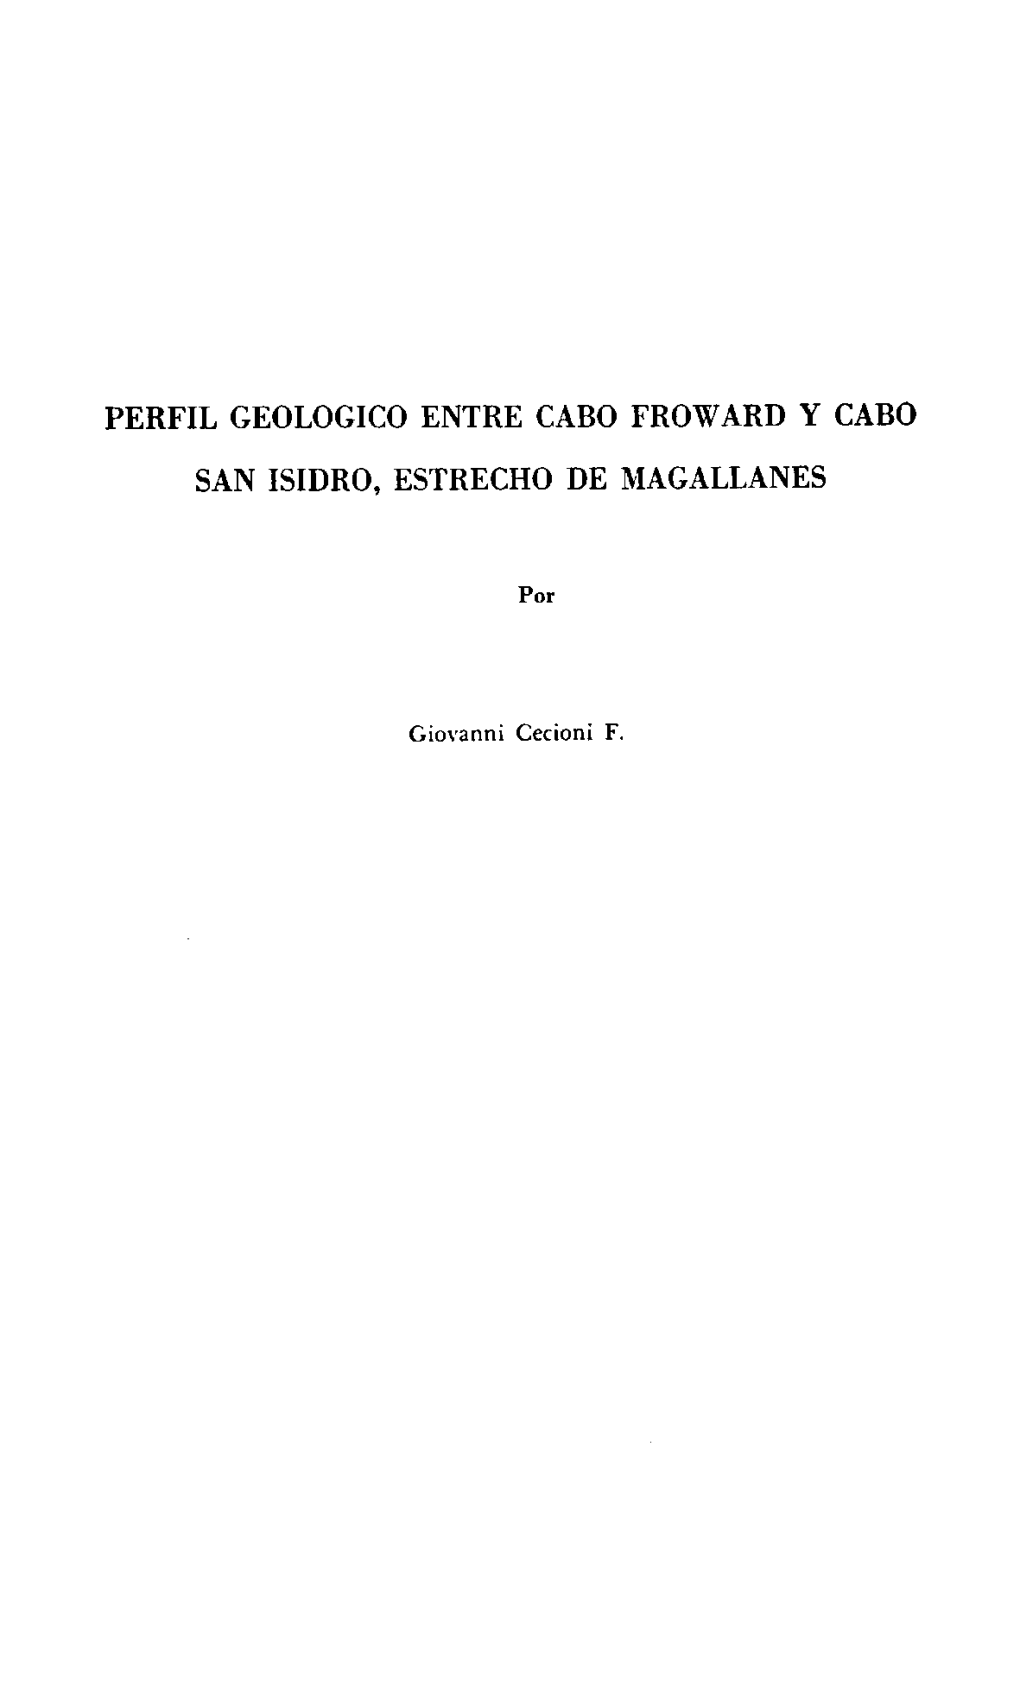 Perfil Geologico Entre Cabo Froward Y Cabo San Isidro, Estrecho De